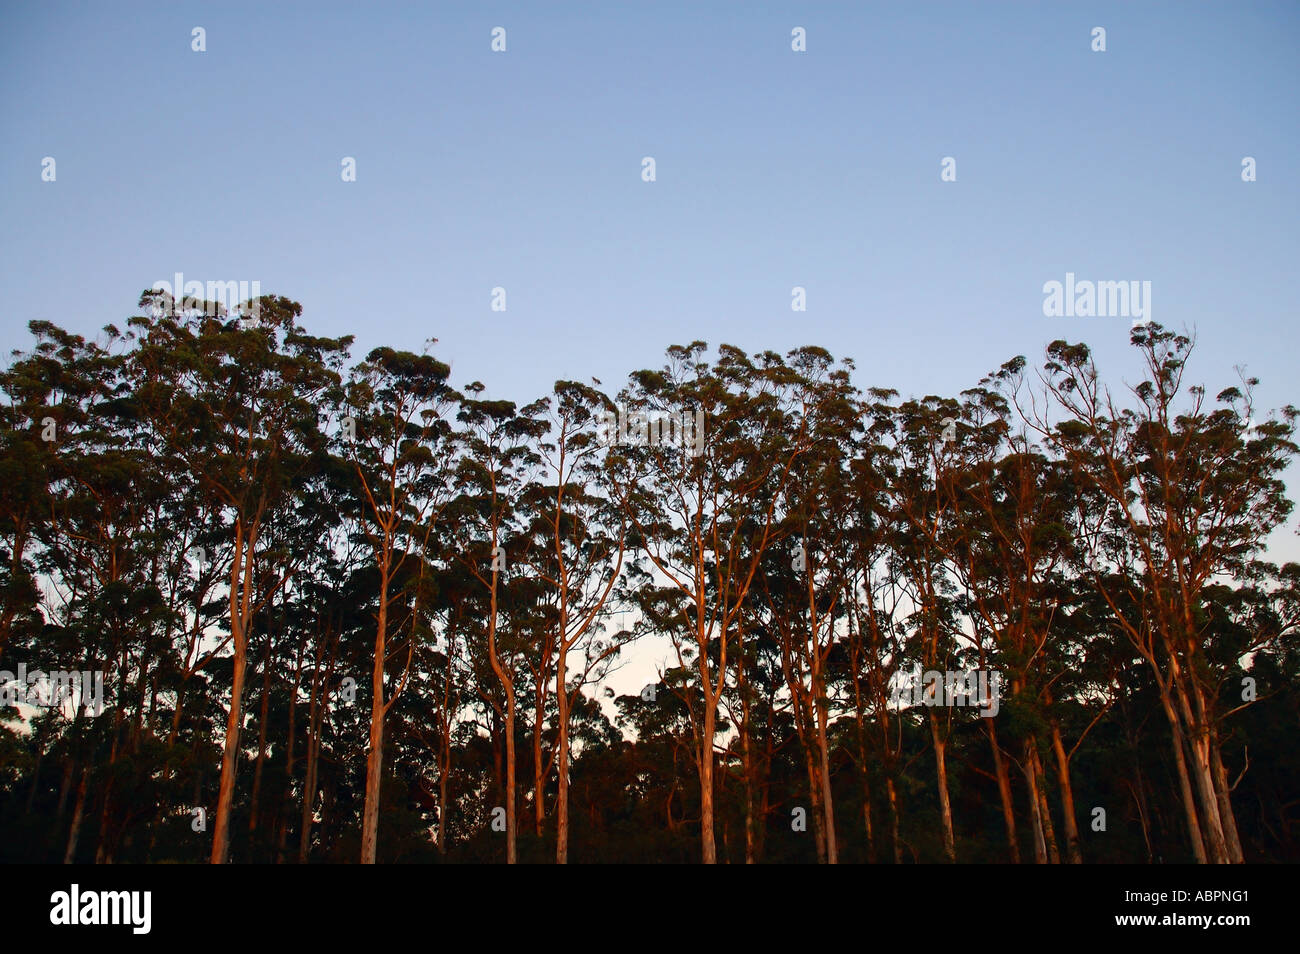 Aube lumière sur de magnifiques arbres karri Eucalyptus diversicolor dans les forêts du sud ouest de l'Australie près de Danemark Banque D'Images